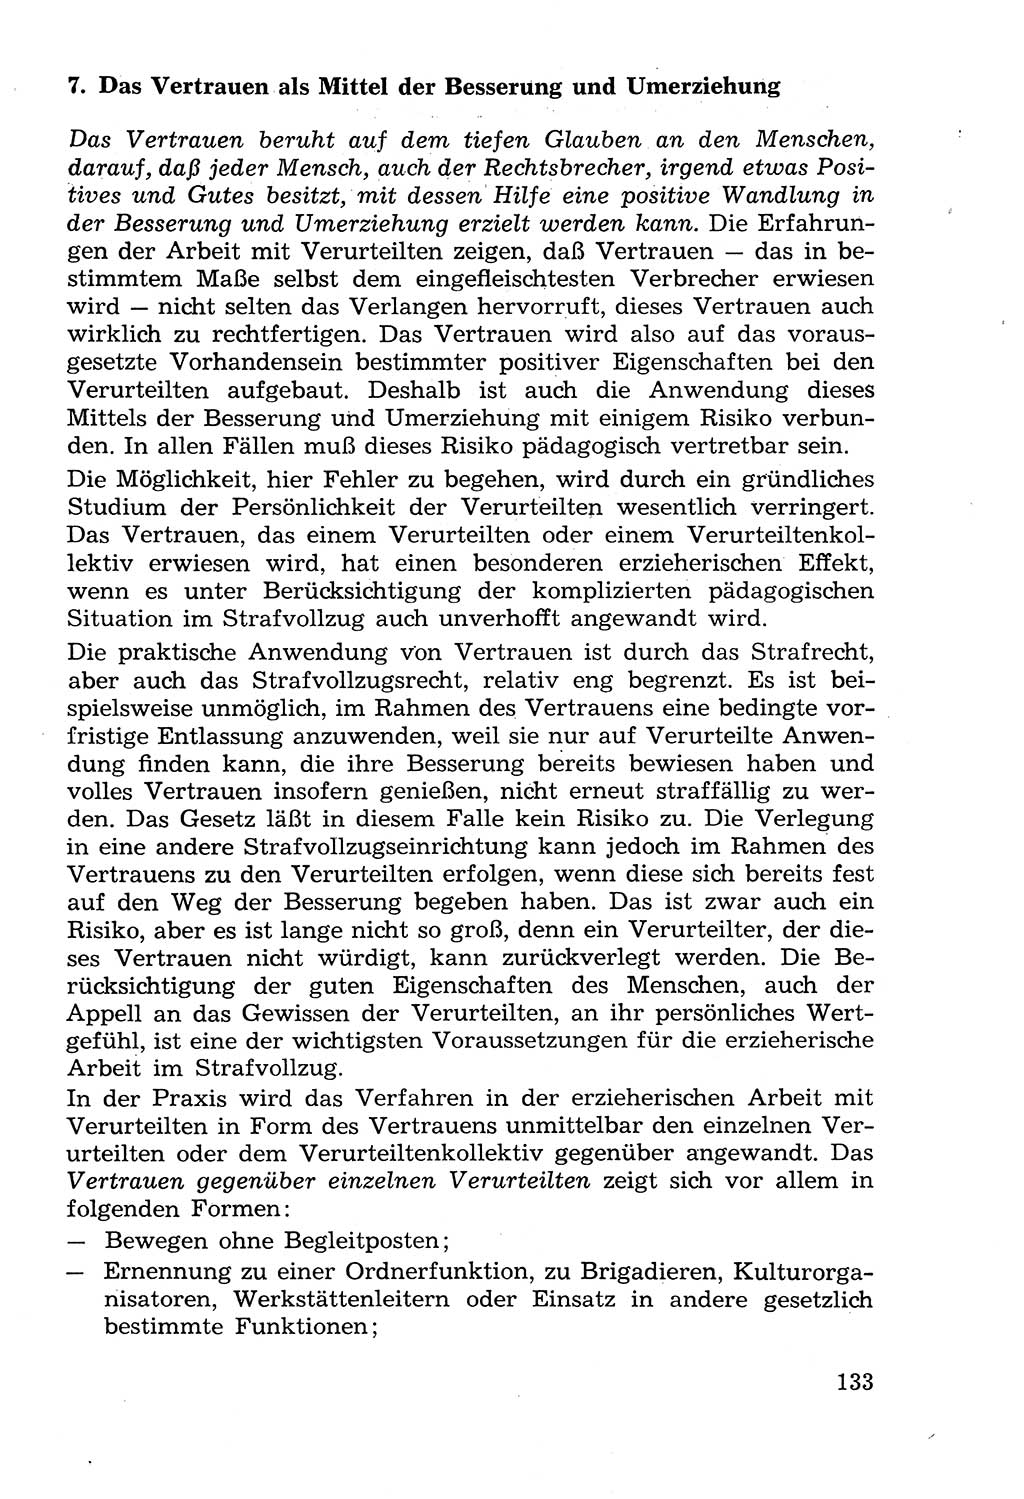 Lehrbuch der Strafvollzugspädagogik [Deutsche Demokratische Republik (DDR)] 1969, Seite 133 (Lb. SV-Pd. DDR 1969, S. 133)